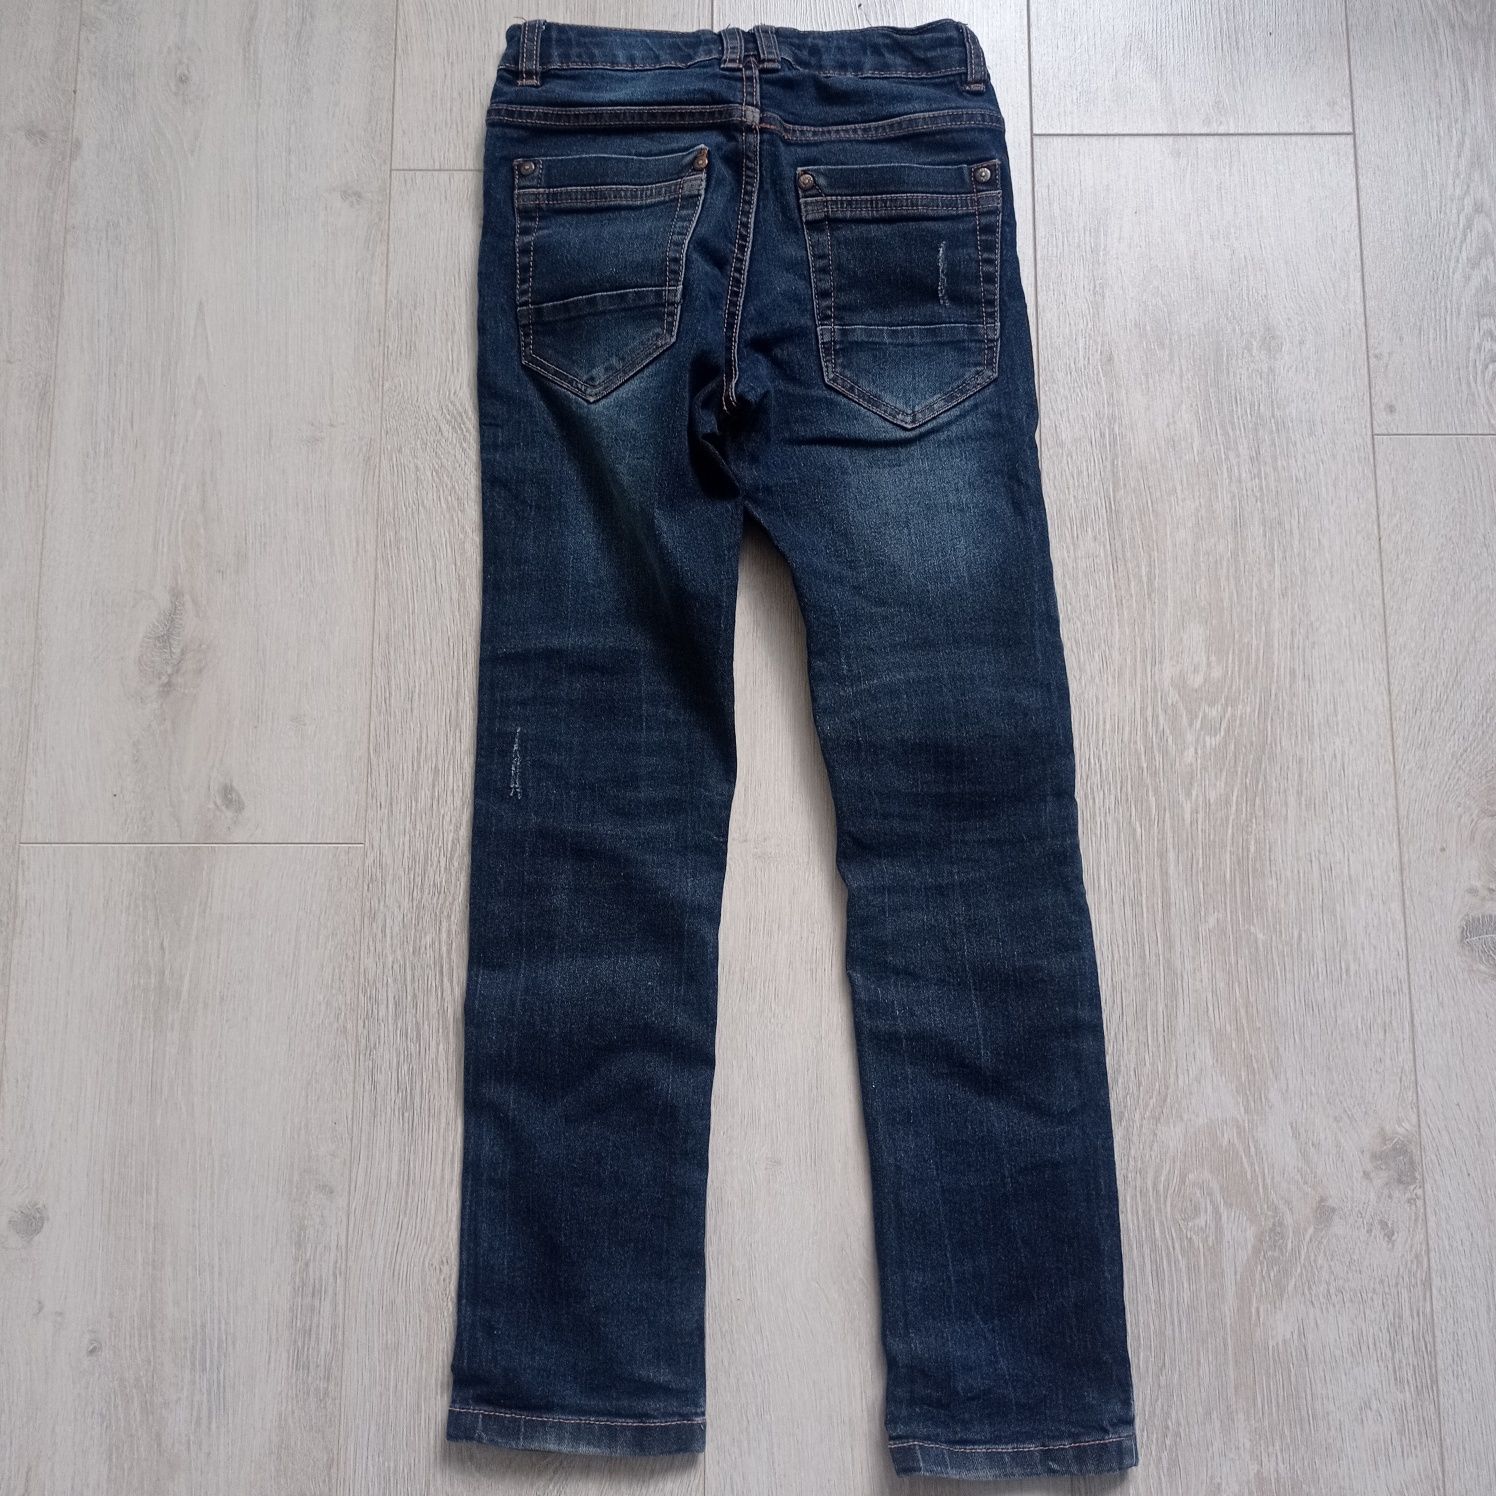 Spodnie jeansowe dla chłopca 140